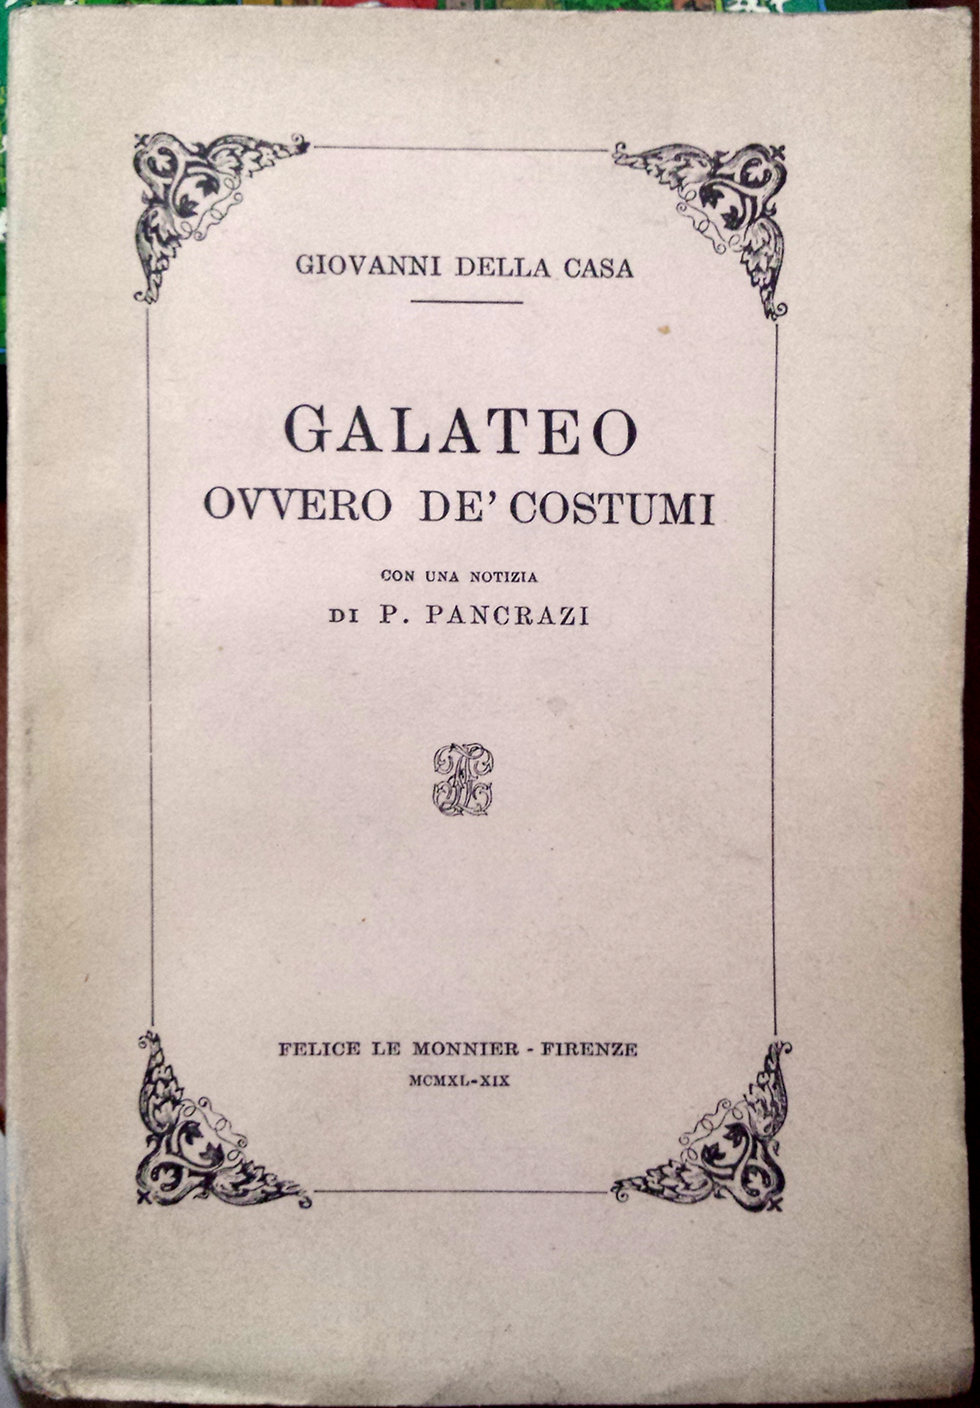 Giovanni-Della-Casa-Galateo-ovvero-De-costumi-con-una-notizia-di-P.-Pancrazi-Ed.-Le-Monnier-1940.jpg